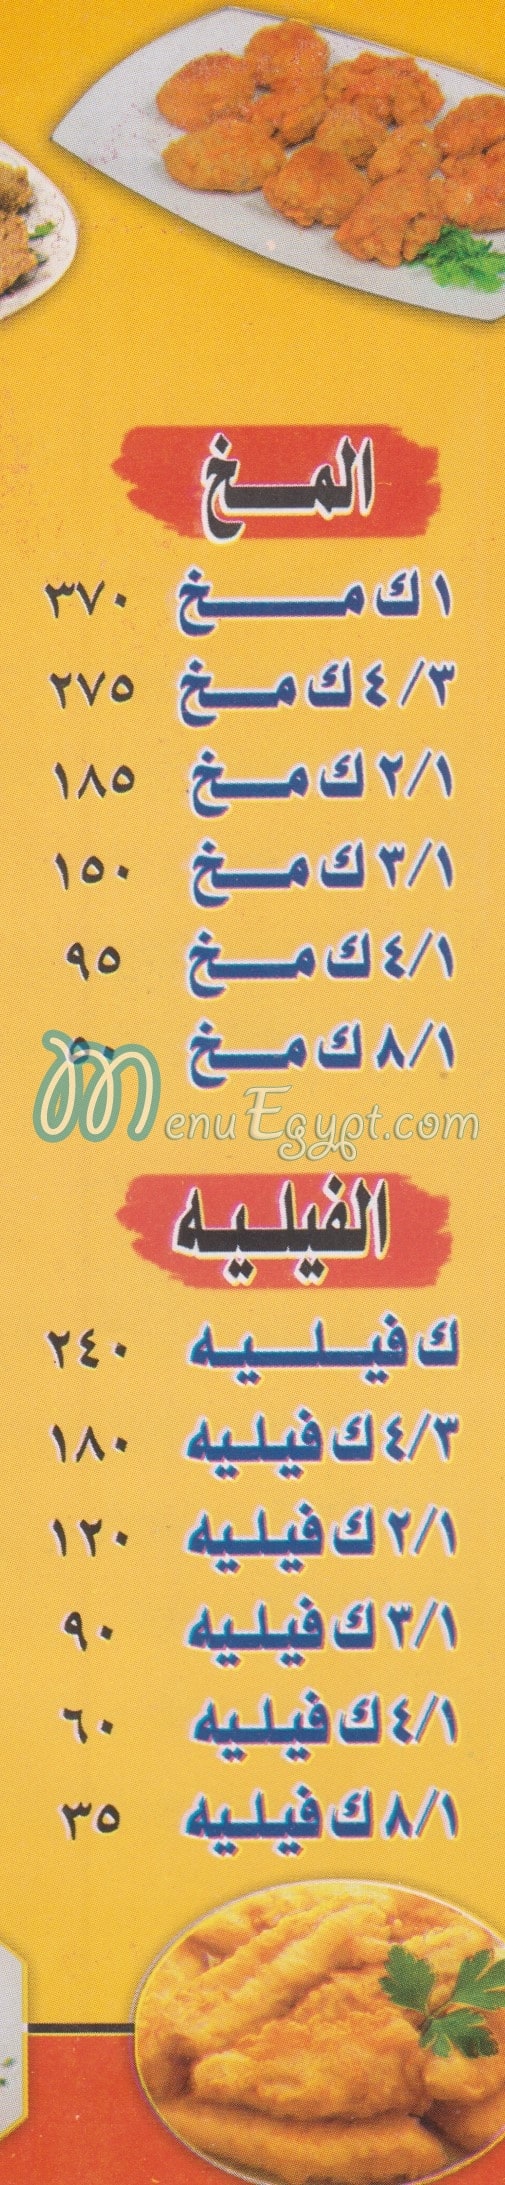 El Sharaqawey El Hay El 3asher menu Egypt